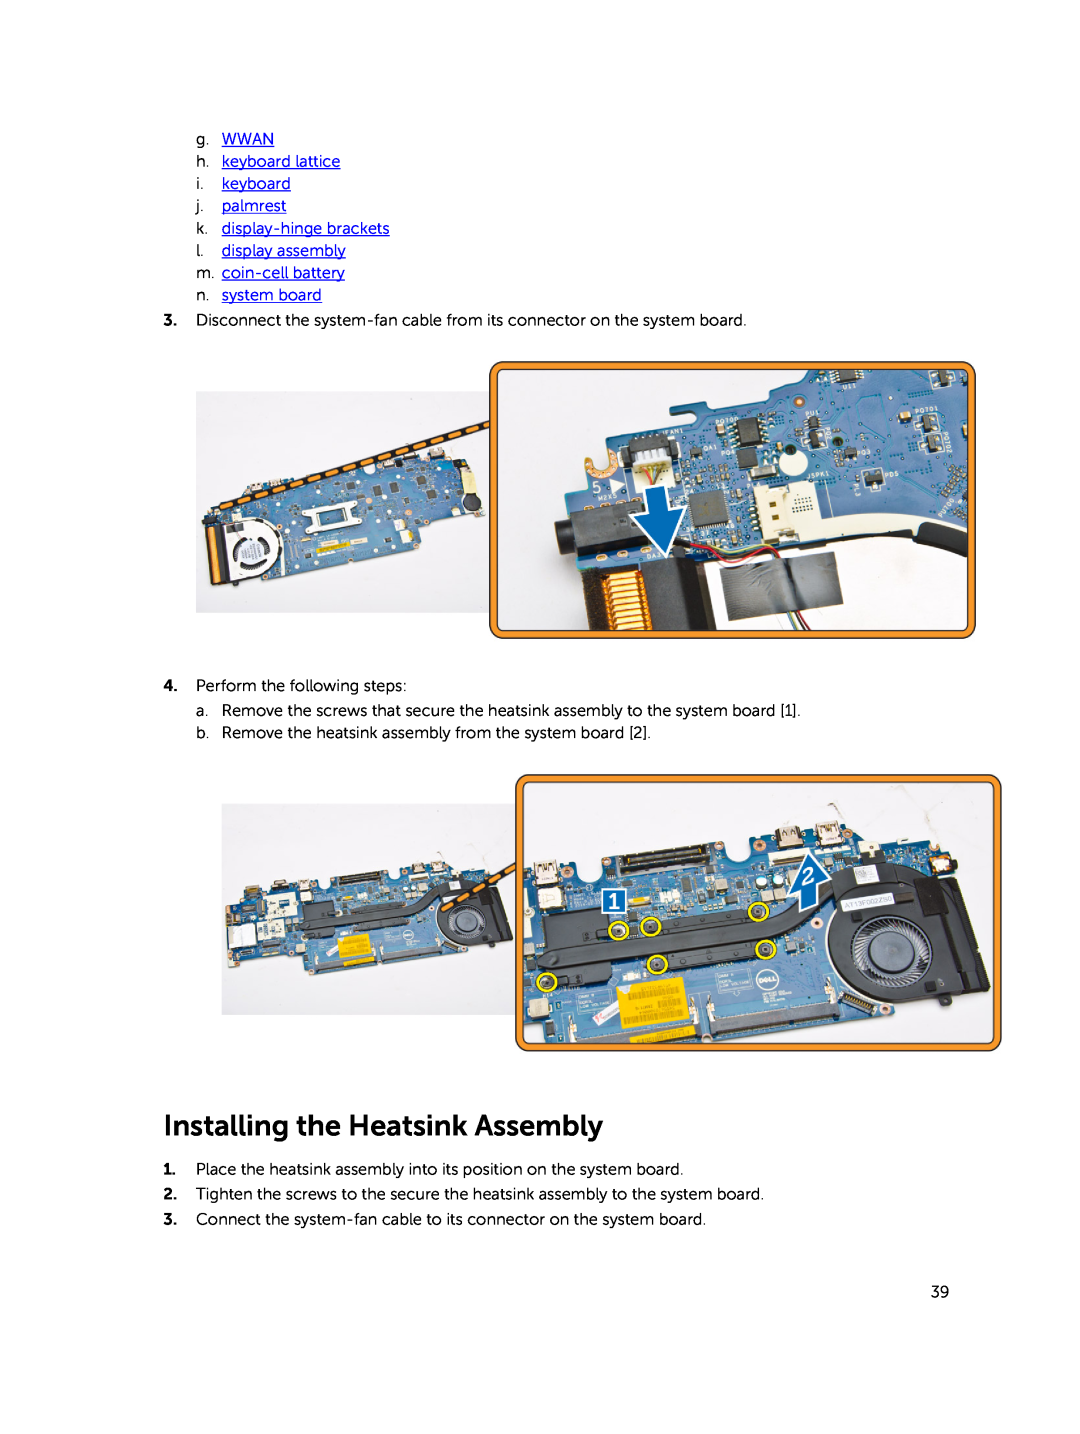 Dell E5450 Installing the Heatsink Assembly, g. WWAN h. keyboard lattice i. keyboard j. palmrest, n. system board 